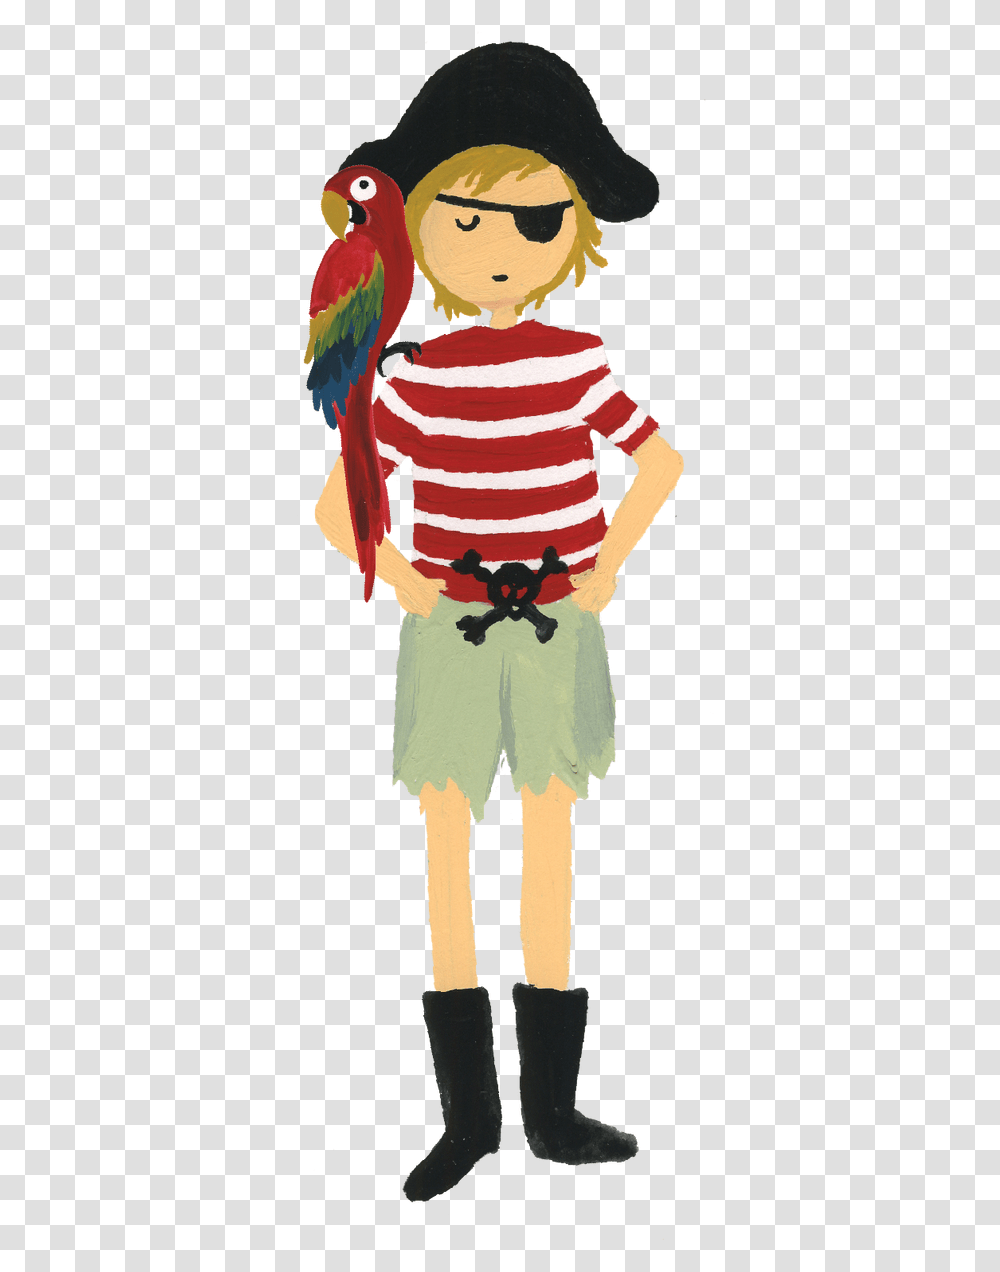 Pirate With Parrot Print Amp Cut File Cartoon, Costume, Bird, Animal Transparent Png